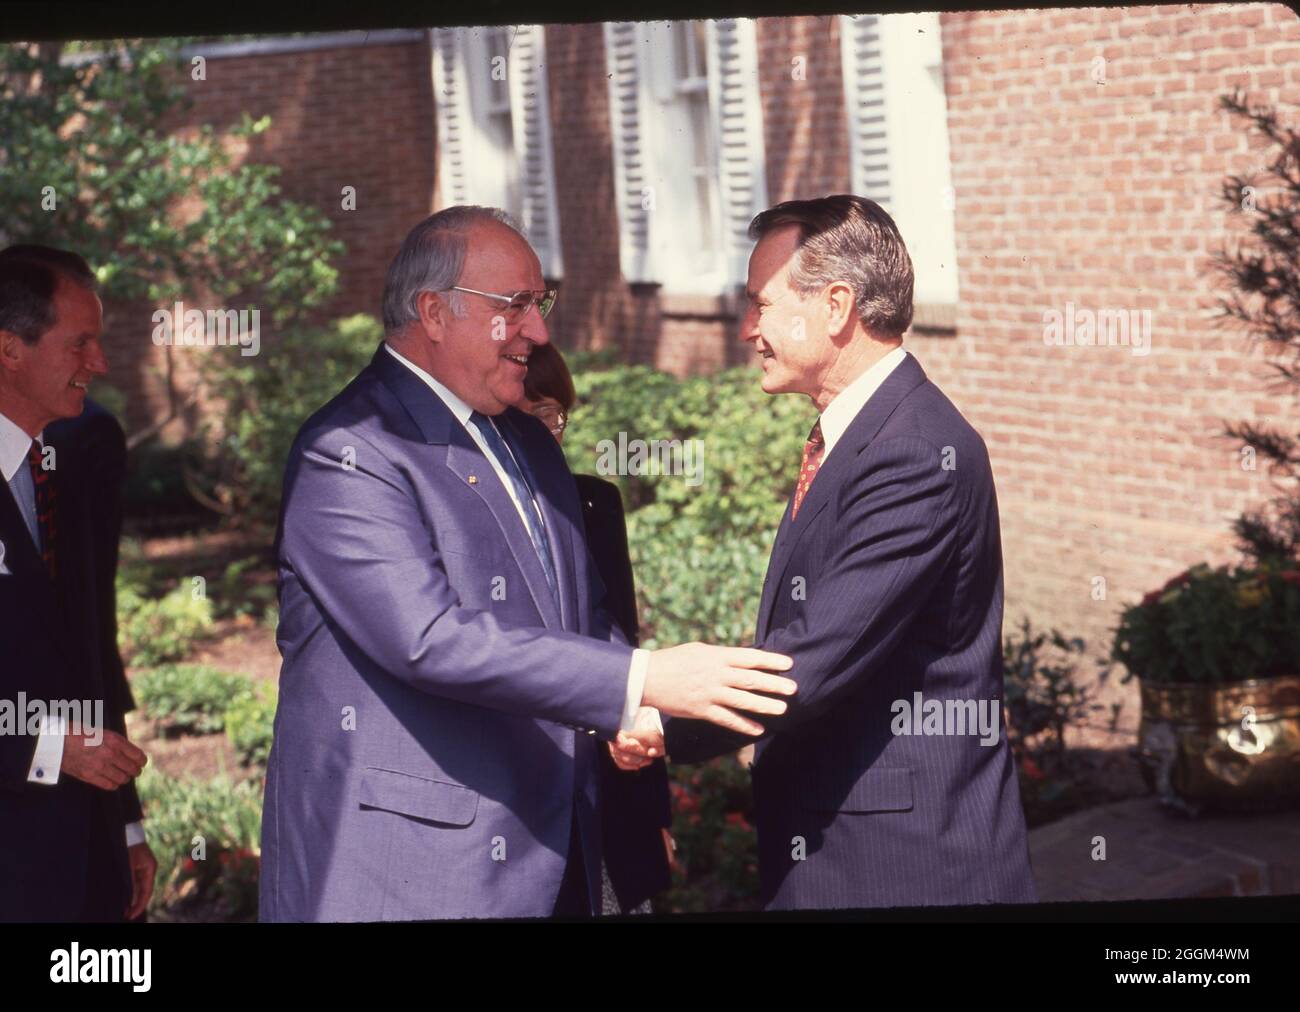 Houston Texas USA, Juli 1990: Bundeskanzler Helmut Kohl, links, schüttelt sich die Hände mit Präsident George H.W. Bush beim Houston Economic Summit of Industrialized Nations auf einer Pressekonferenz im Freien auf dem Campus der Universität von Reis. ©Bob Daemmrich Stockfoto